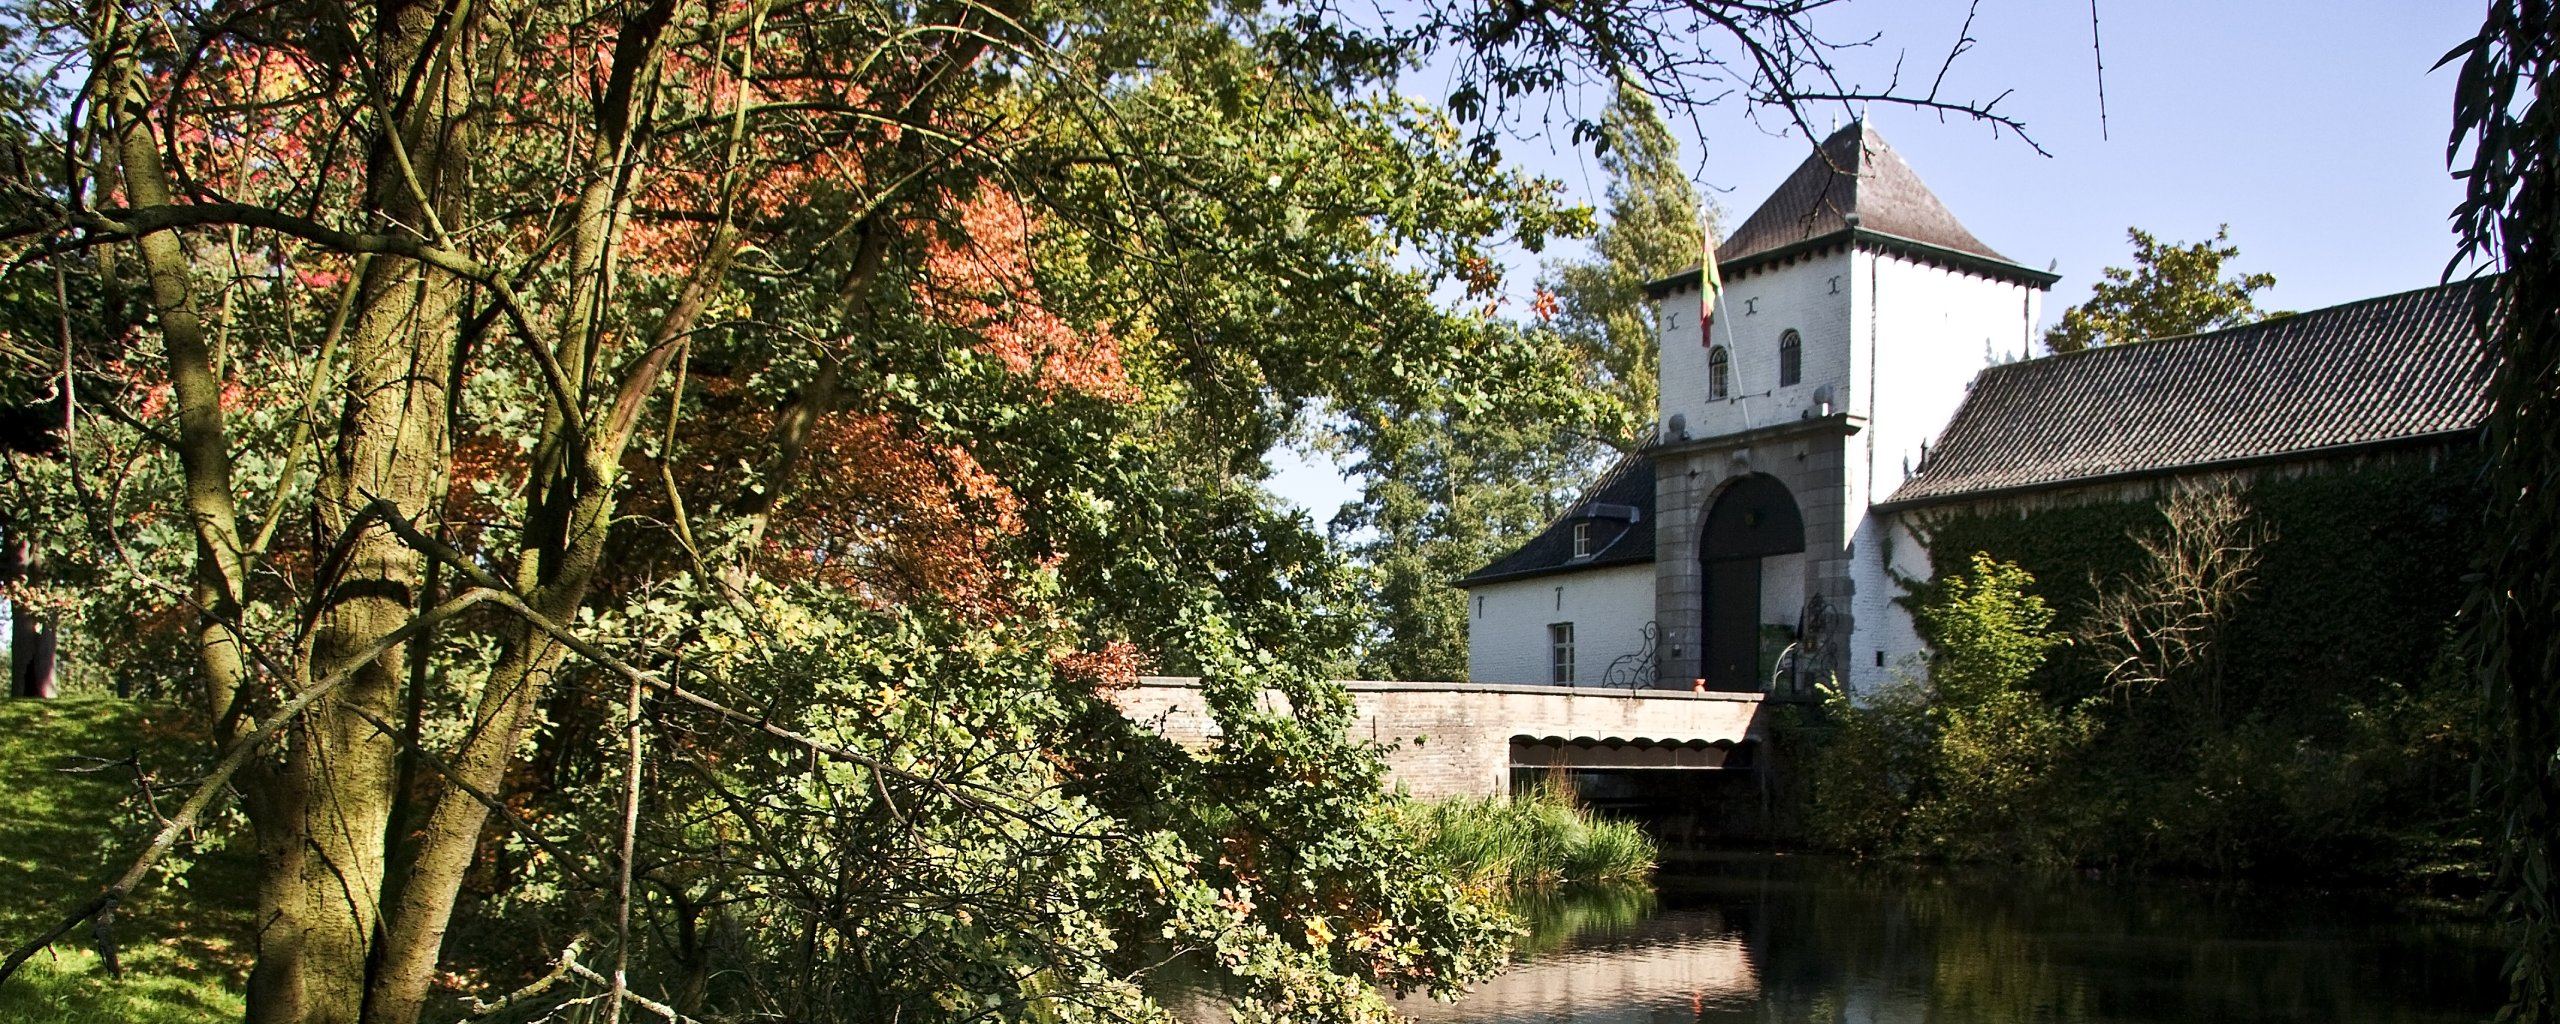 Bomen en water met rechts de brug en de entree van kasteel Daelenbroeck in Herkenbosch